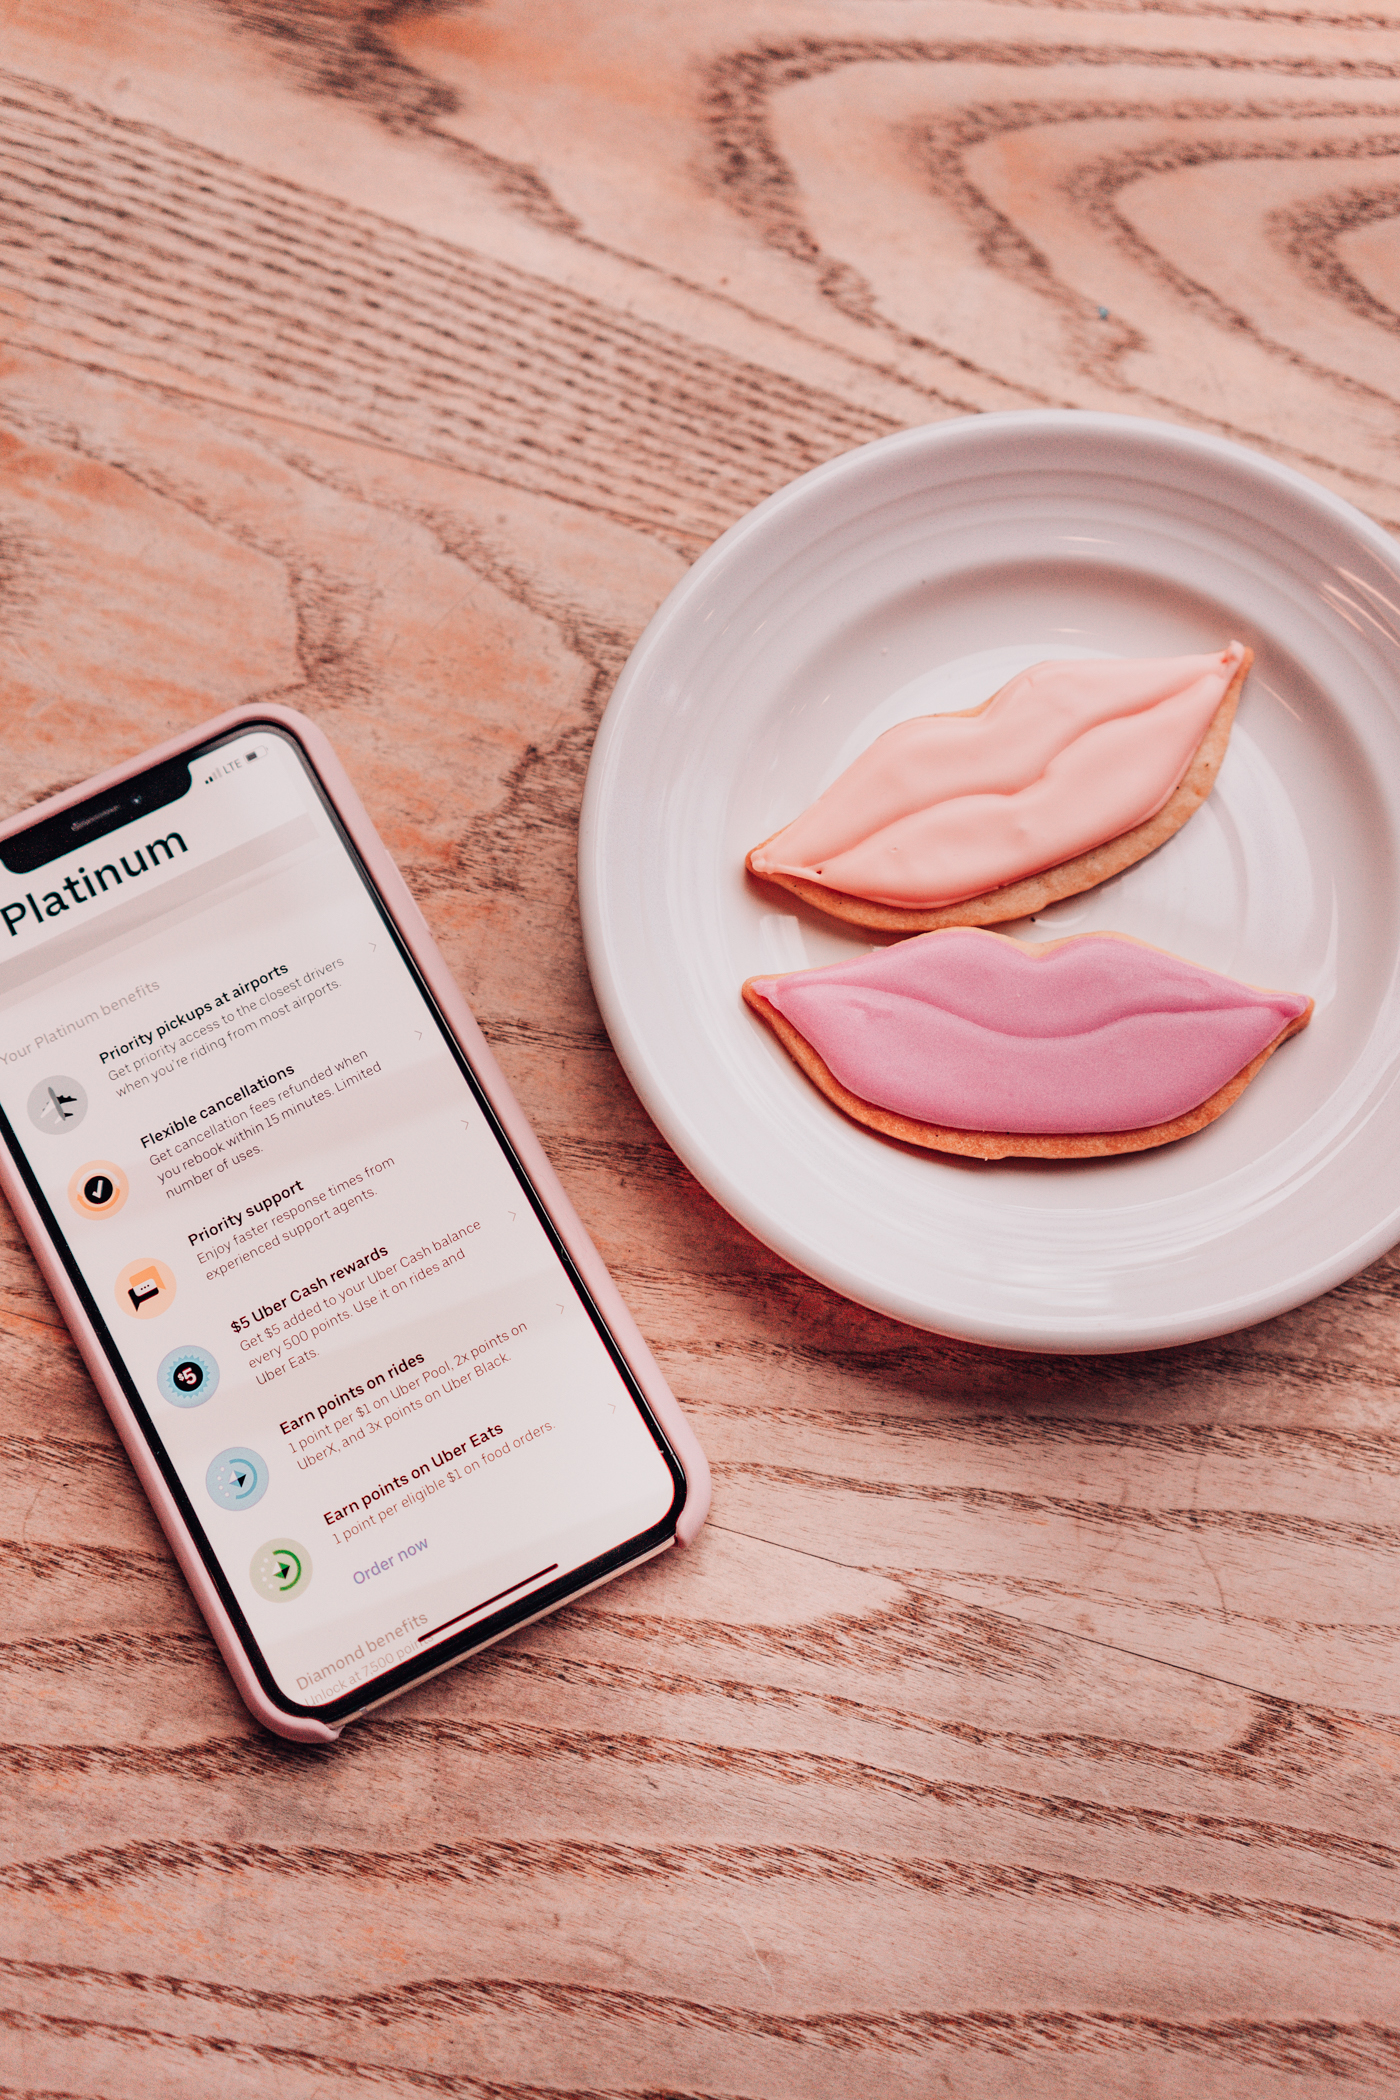 Uber rewards app on phone and cookies 